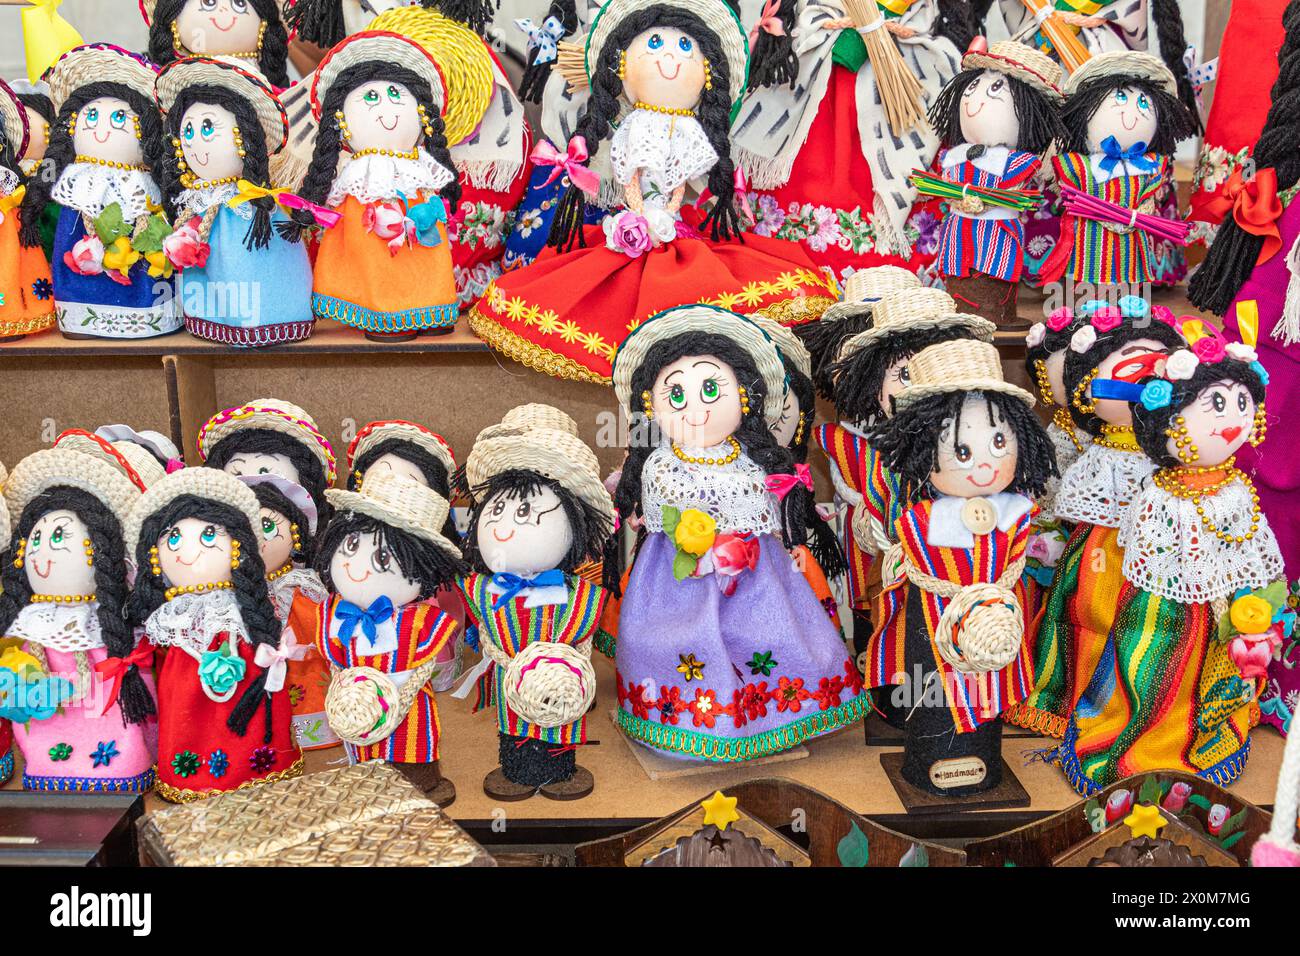 Poupées souvenirs faites à la main dans les vêtements brodés traditionnels, ponchos et chapeaux de paille de la ville de Cuenca et de la province d'Azuay. Équateur. Souvenir Banque D'Images